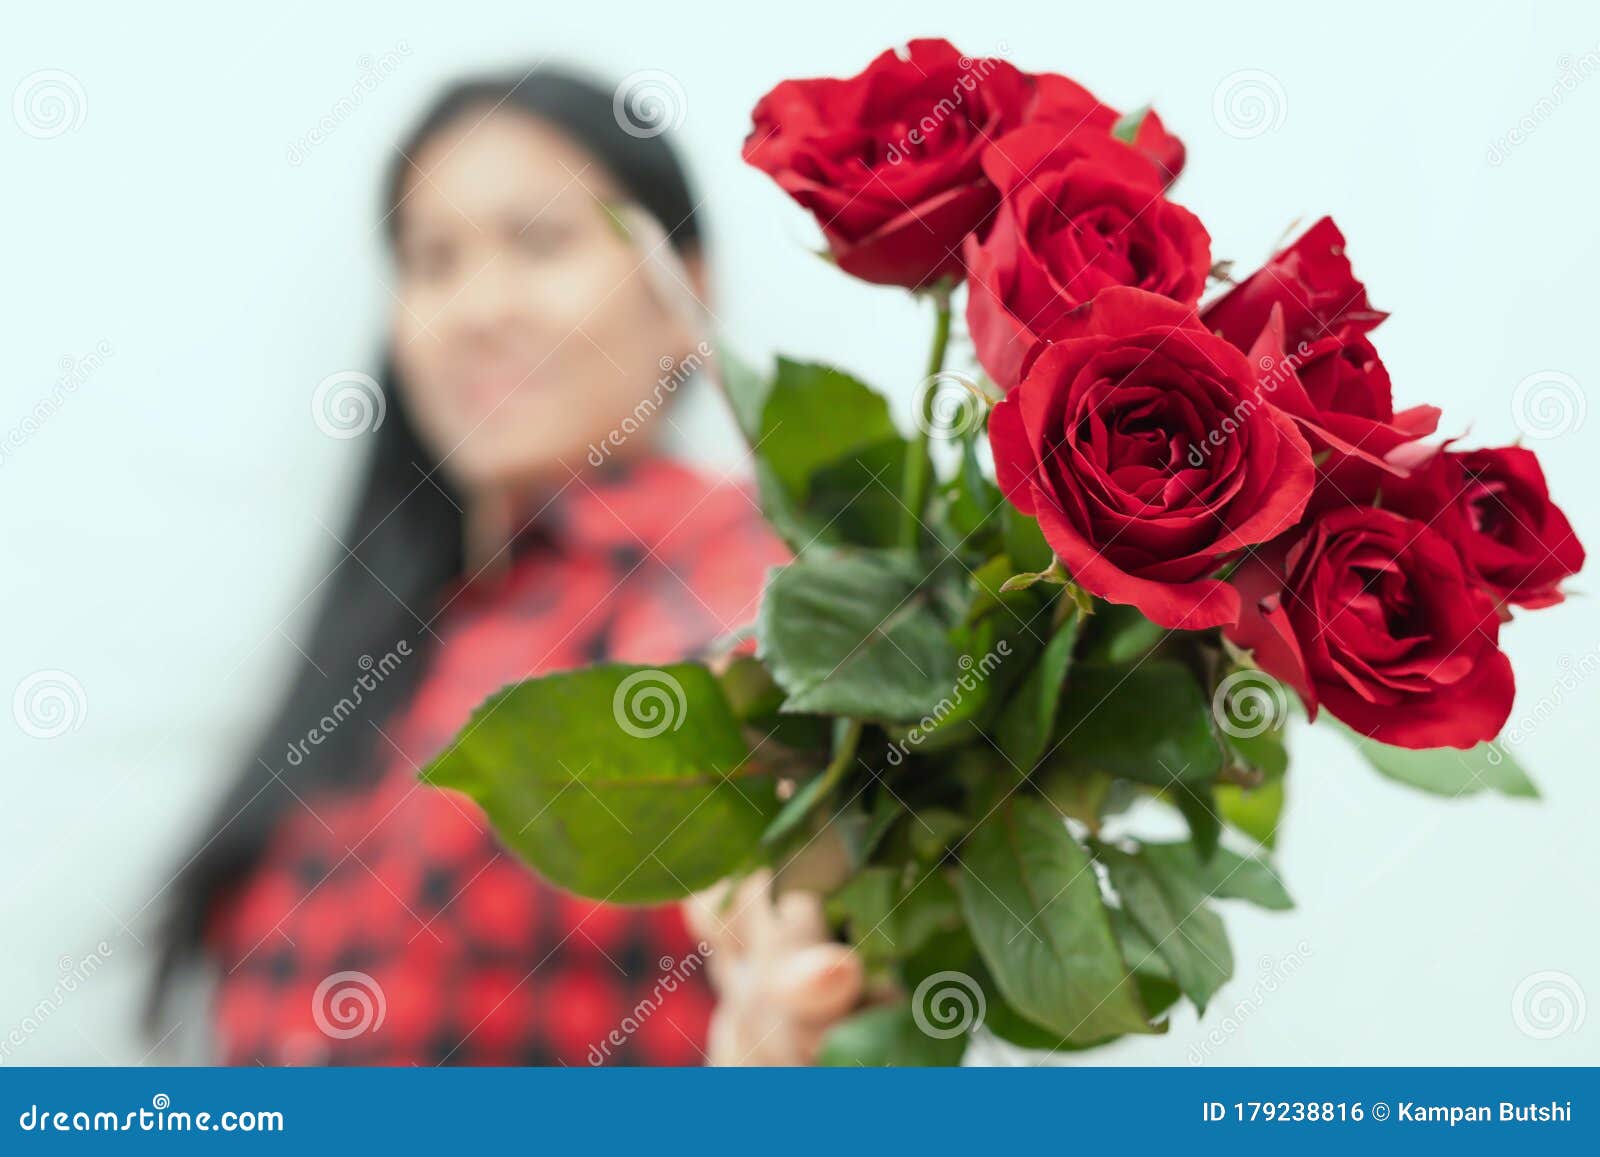 La Rose Rouge Est Un Symbole De L'amour. La Fille a Tenu De Nombreux Roses  Rouges Pour Envoyer Un Cadeau à Son Amant Le Jour De Va Photo stock - Image  du